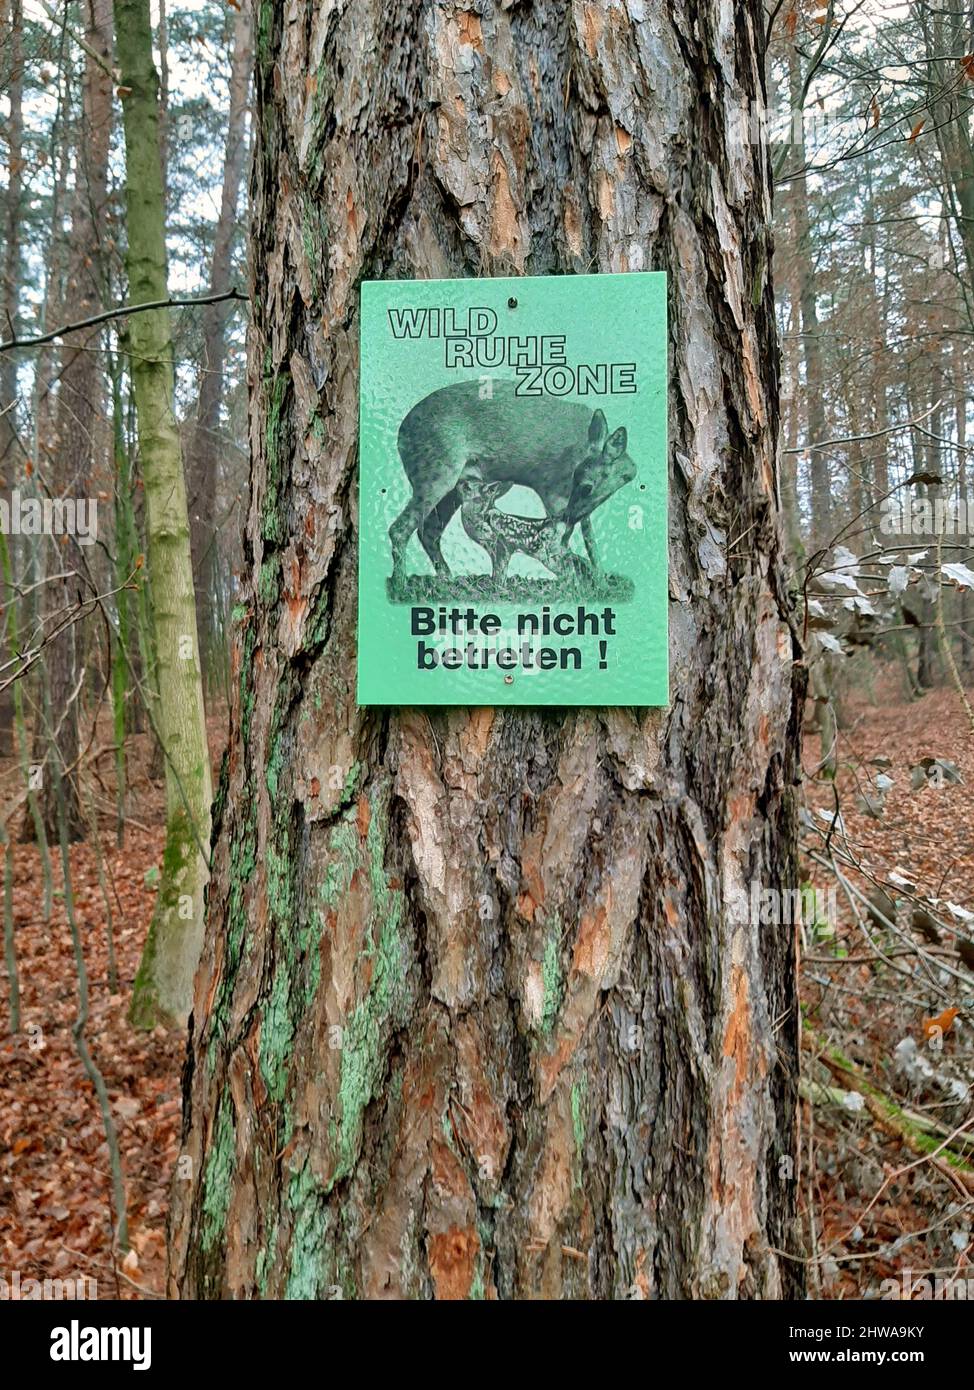 Protection des animaux sauvages - panneau d'information pour les visiteurs de ne pas entrer dans la zone de repos, Allemagne Banque D'Images